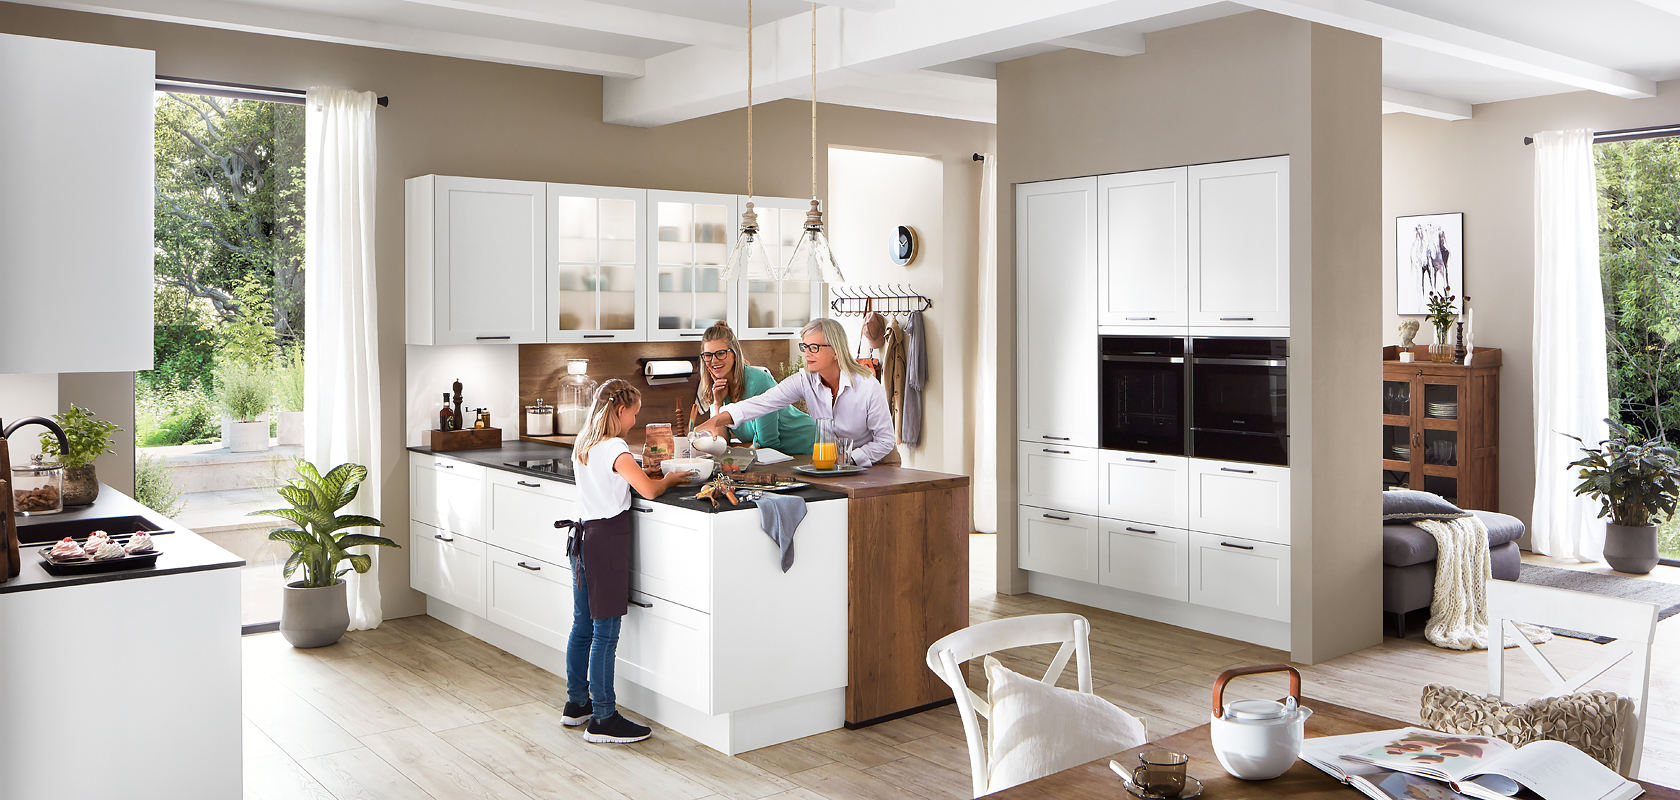 Eine moderne Küche, die mit natürlichem Licht gefüllt ist, in der eine Familie gemeinsam Zeit verbringt und elegante weiße Schränke und Edelstahlgeräte präsentiert.